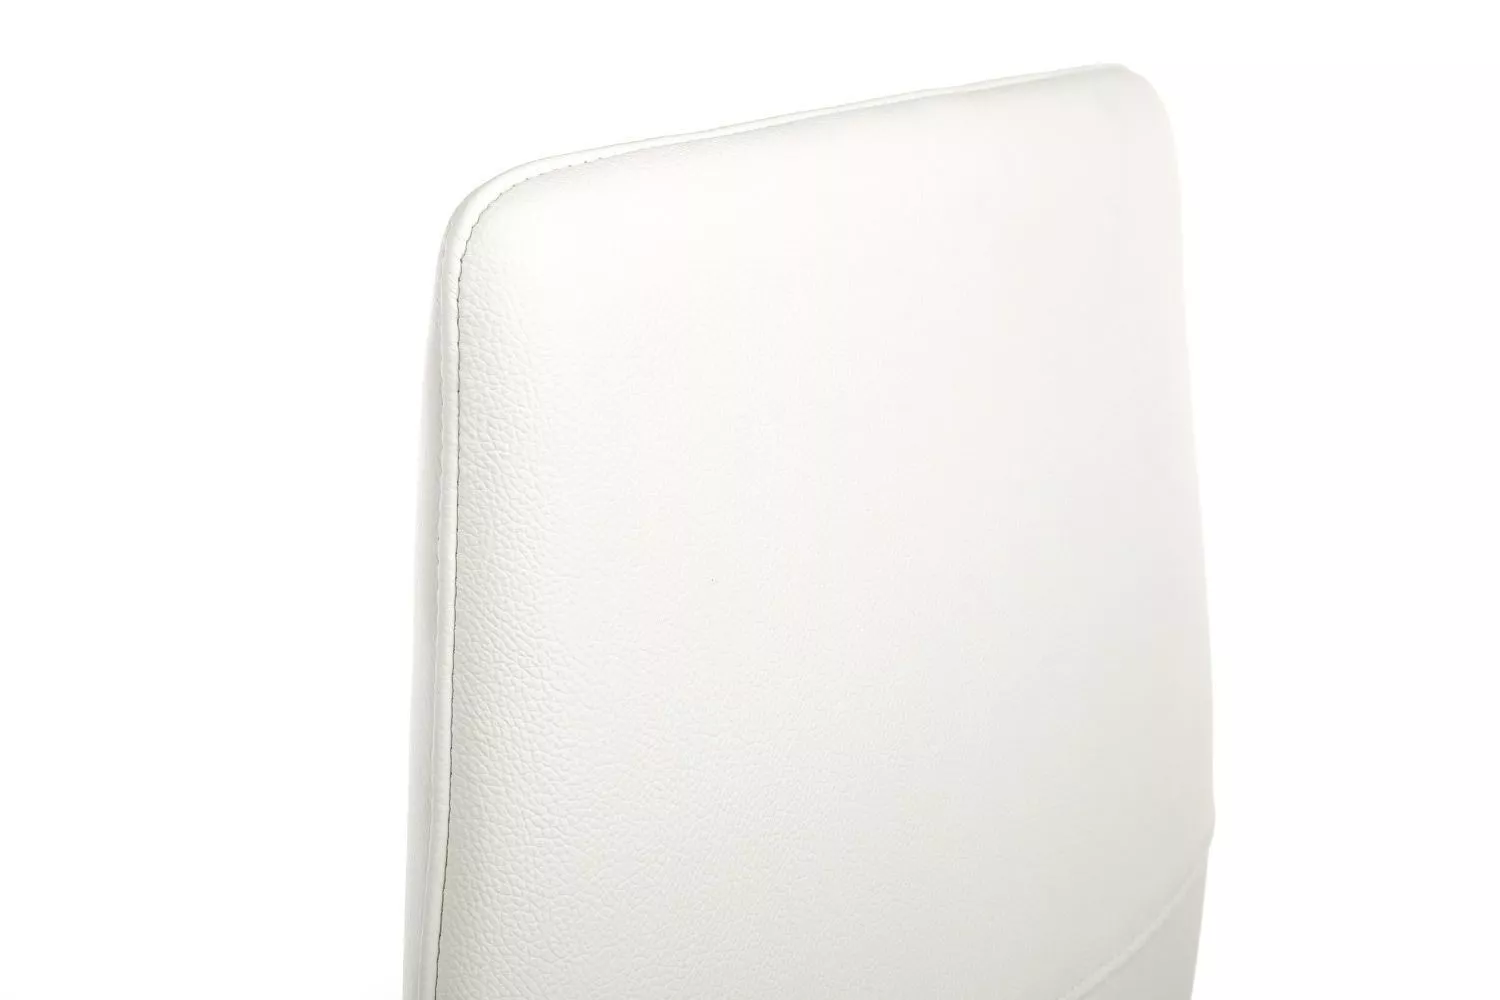 Кресло RIVA DESIGN Spell (А1719) белый